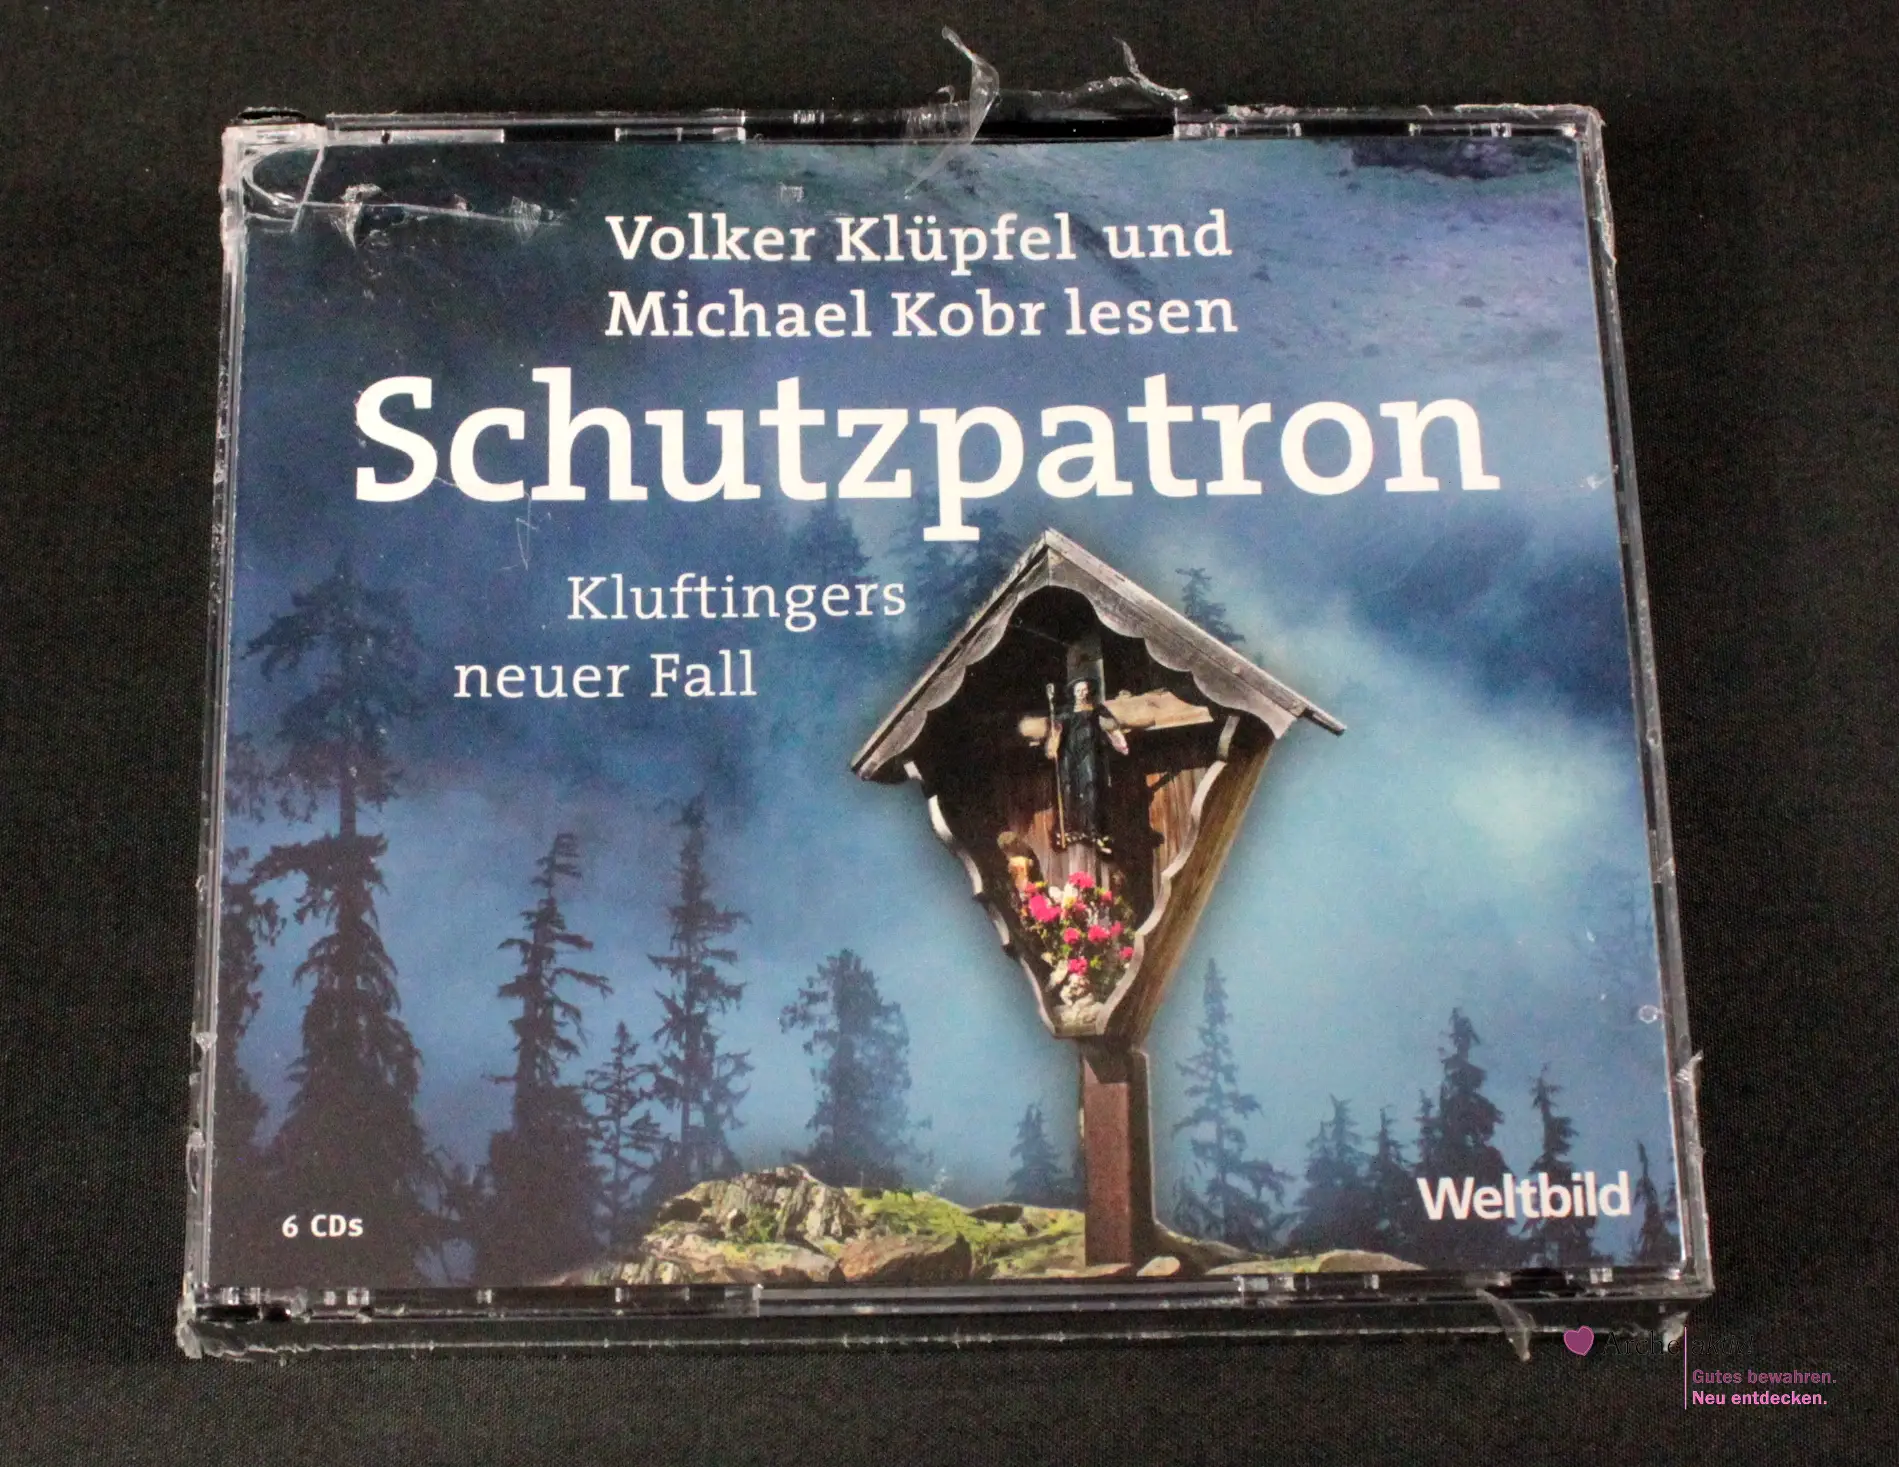 Schutzpatron - Kluftingers neuer Fall - Hörbuch 6 CDs, Neu in OVP